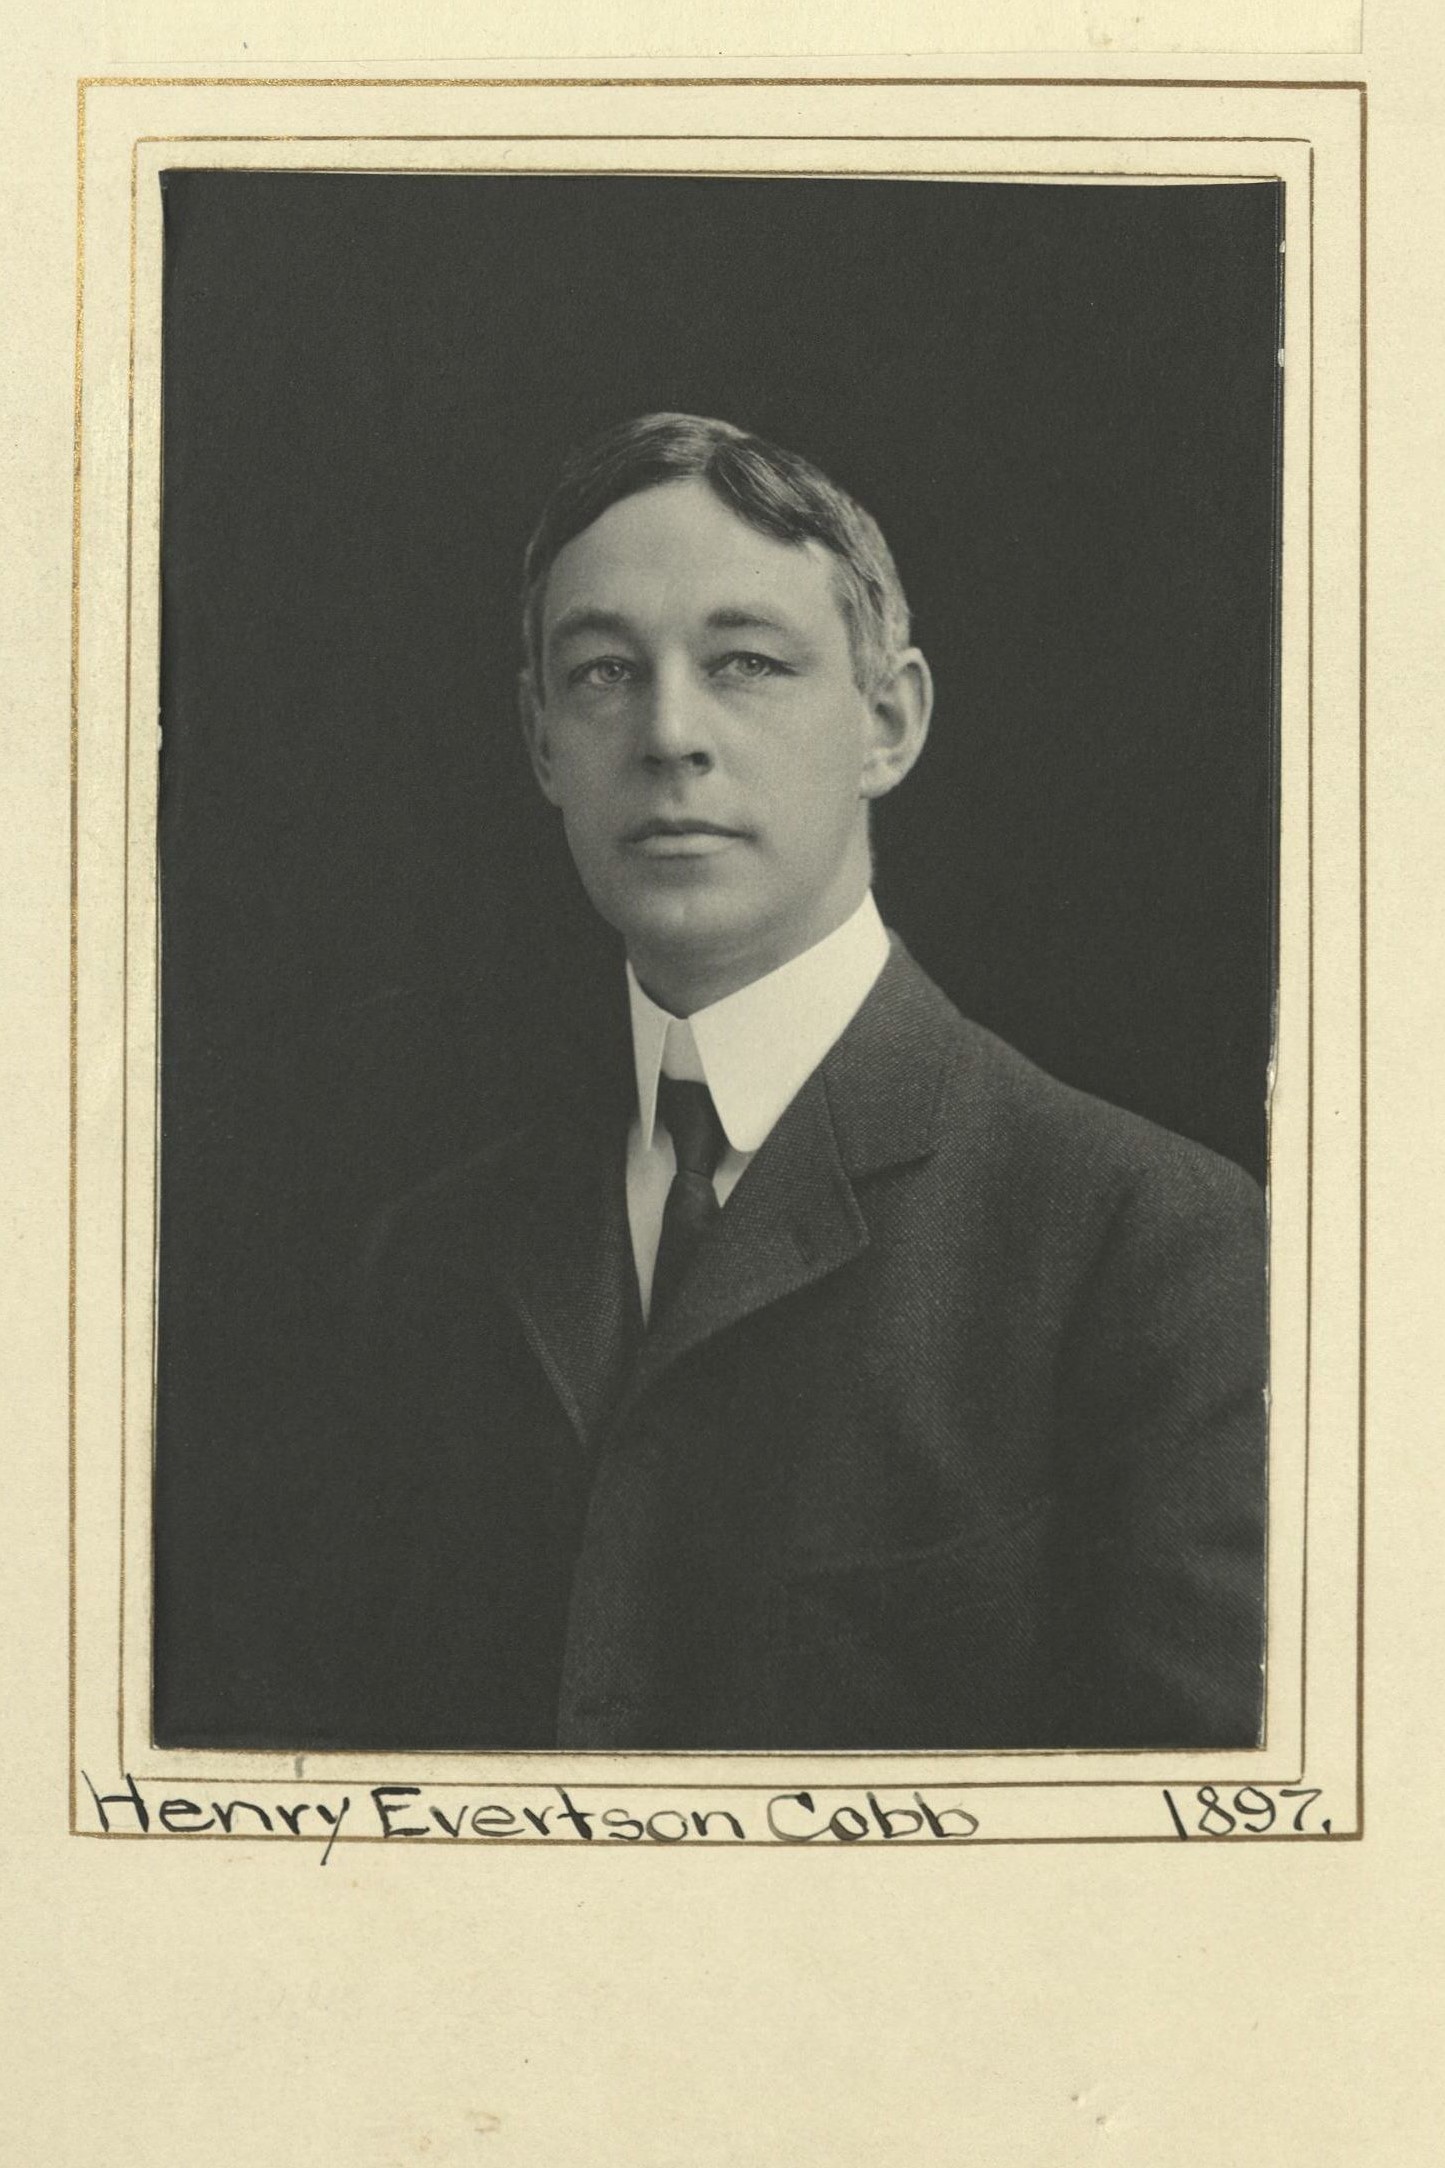 Member portrait of Henry Evertson Cobb